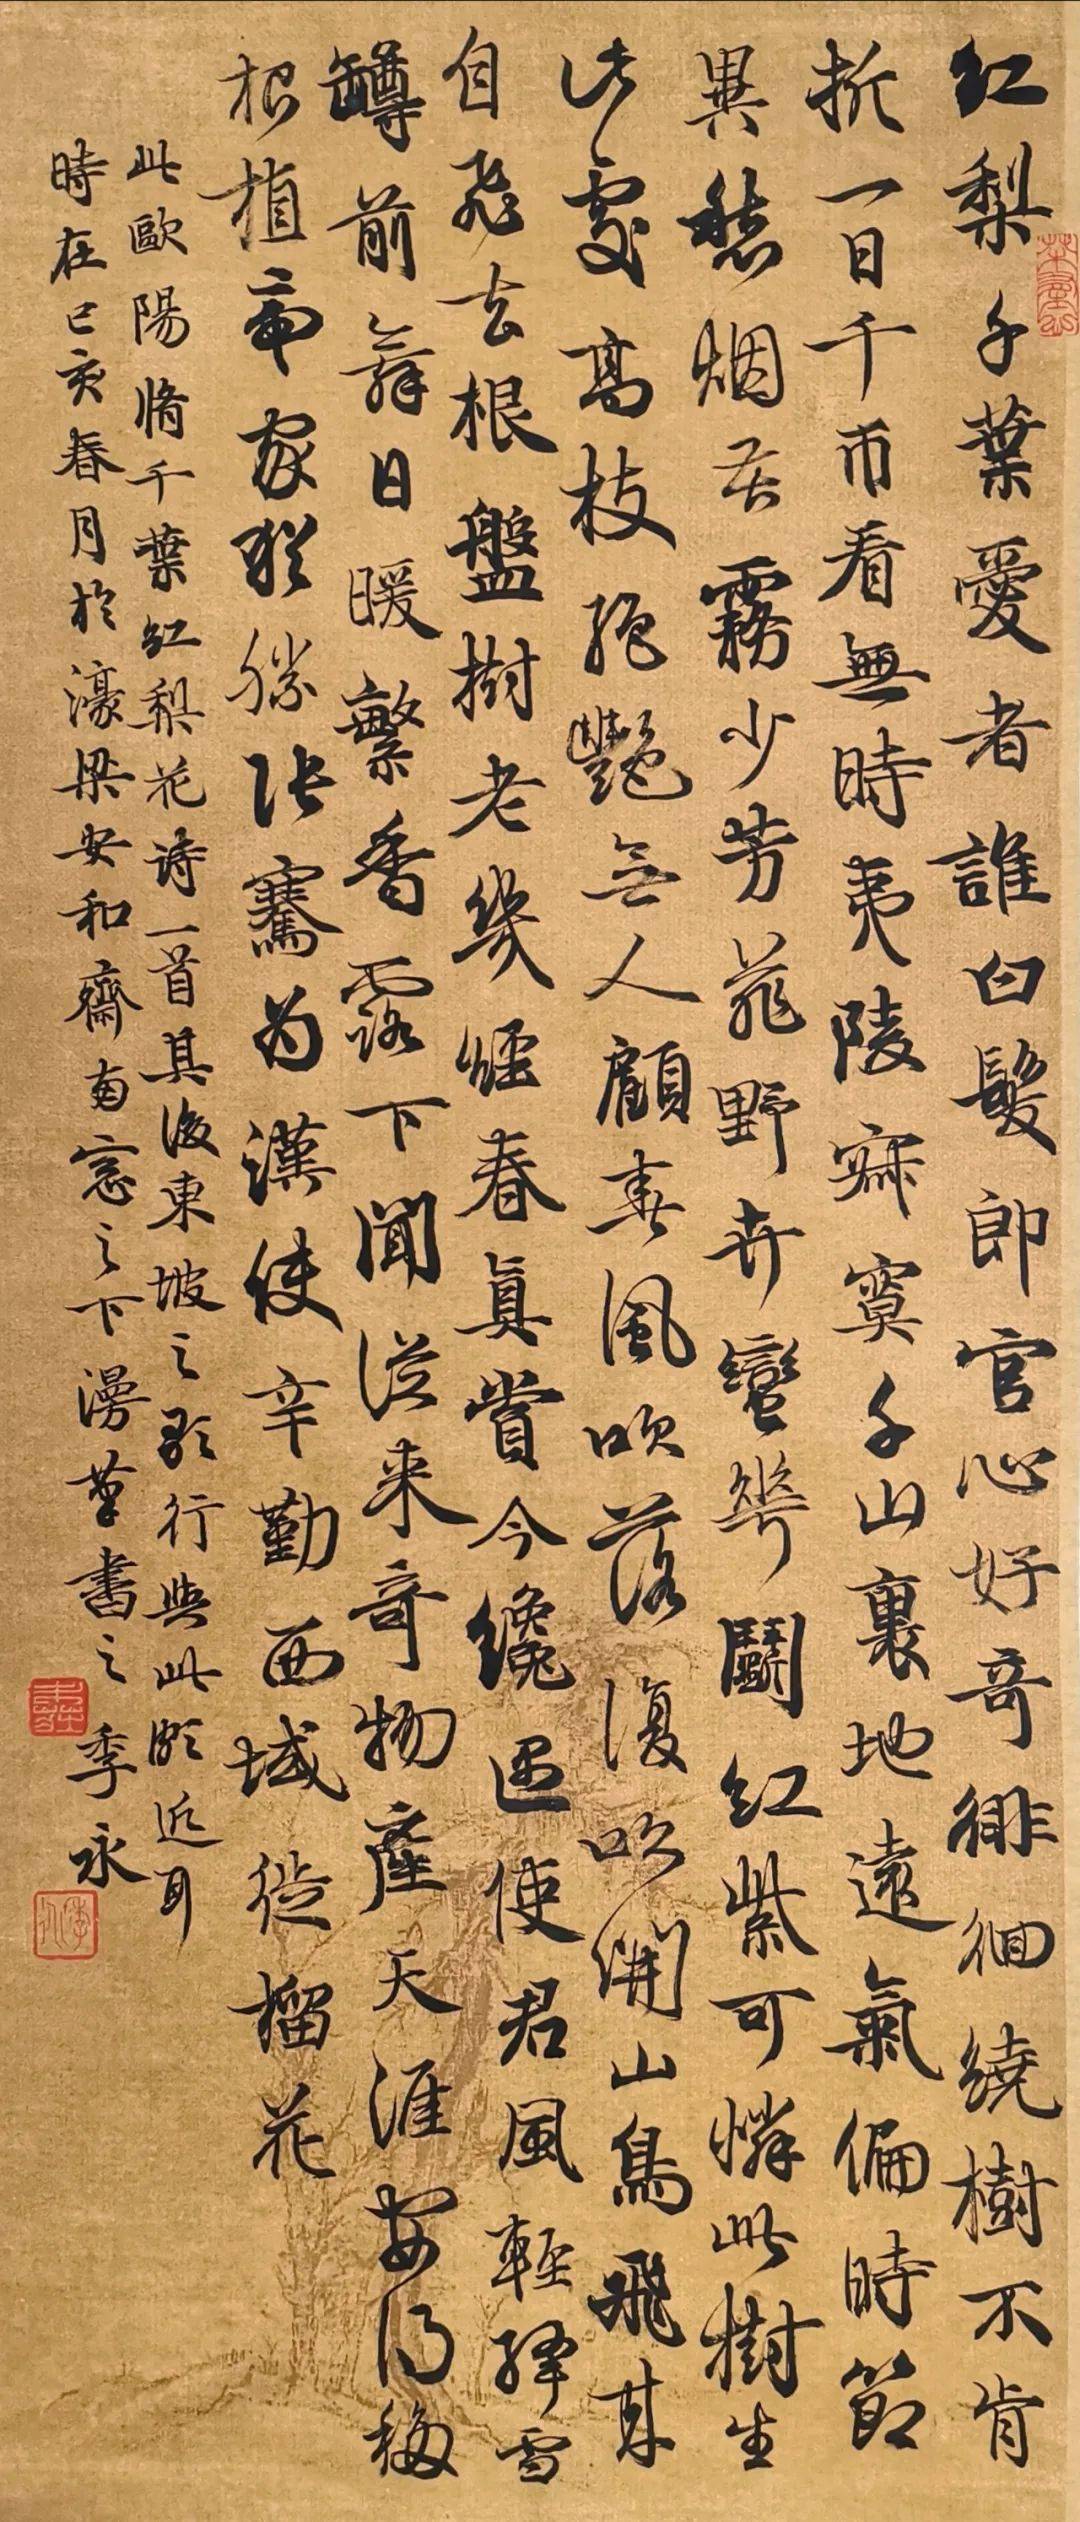 蚌埠市书法家协会主席季永书法作品欣赏(图9)